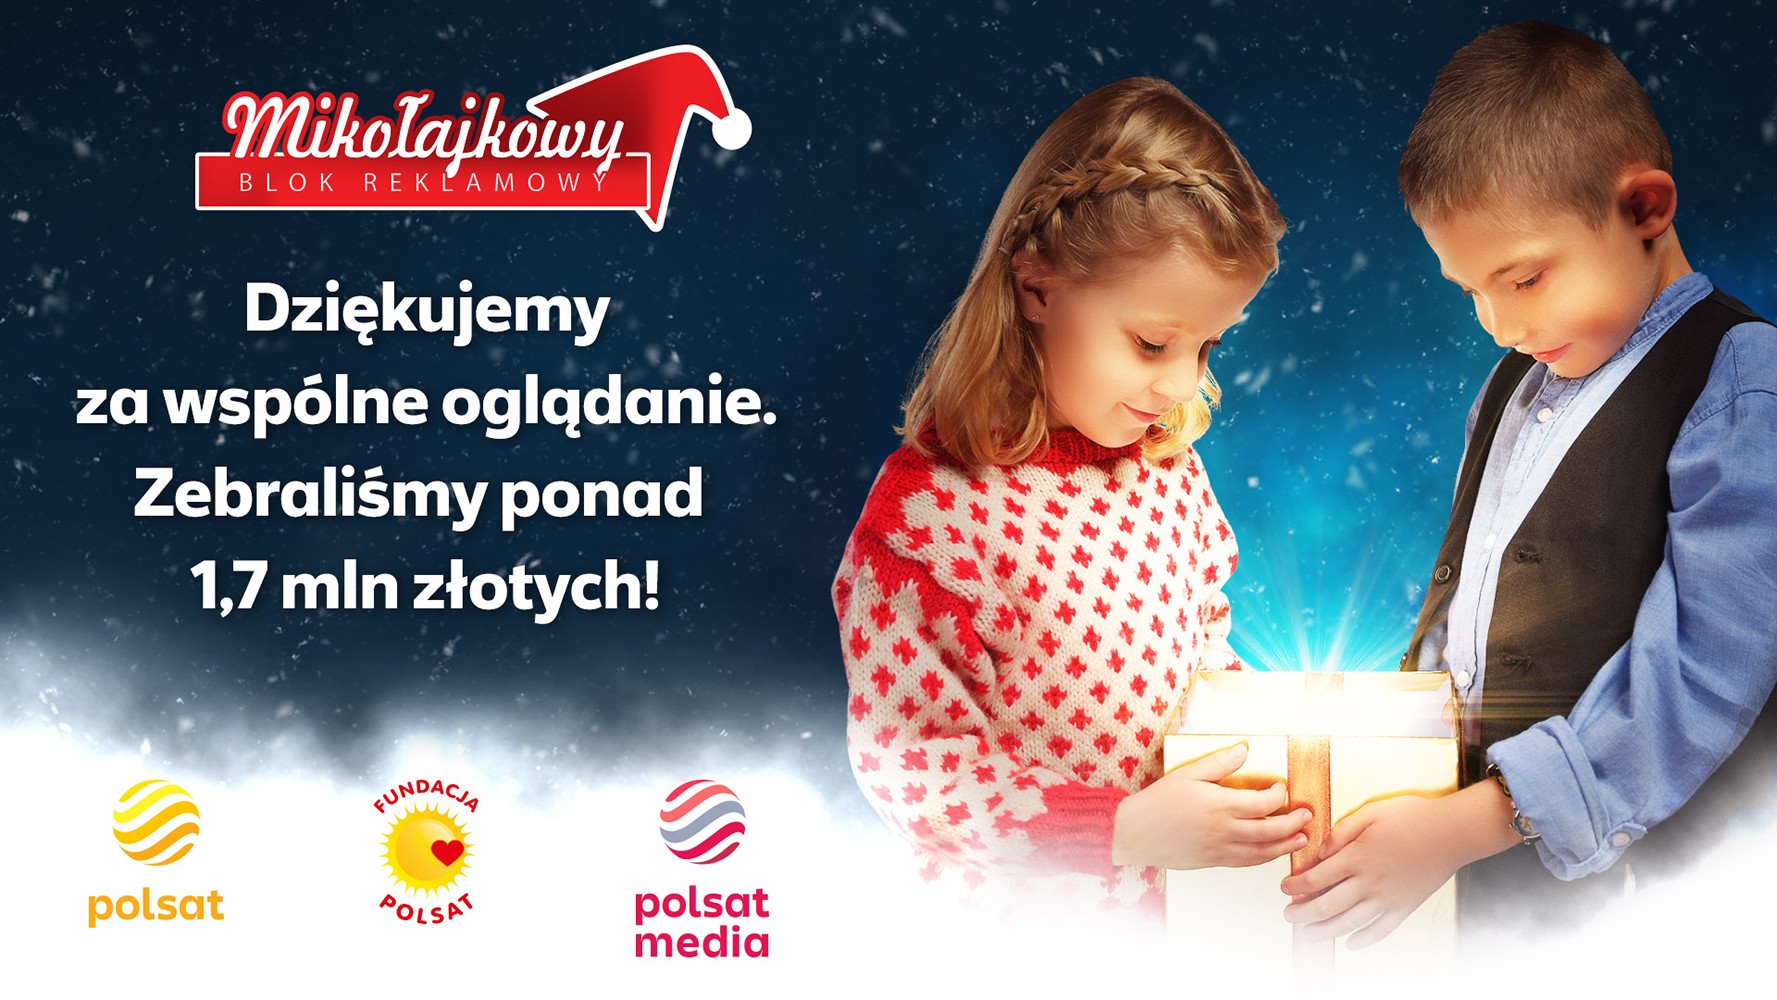 Mikołajkowy Blok Reklamowy ma moc! Ponad 1,7 mln złotych - Polsat.pl